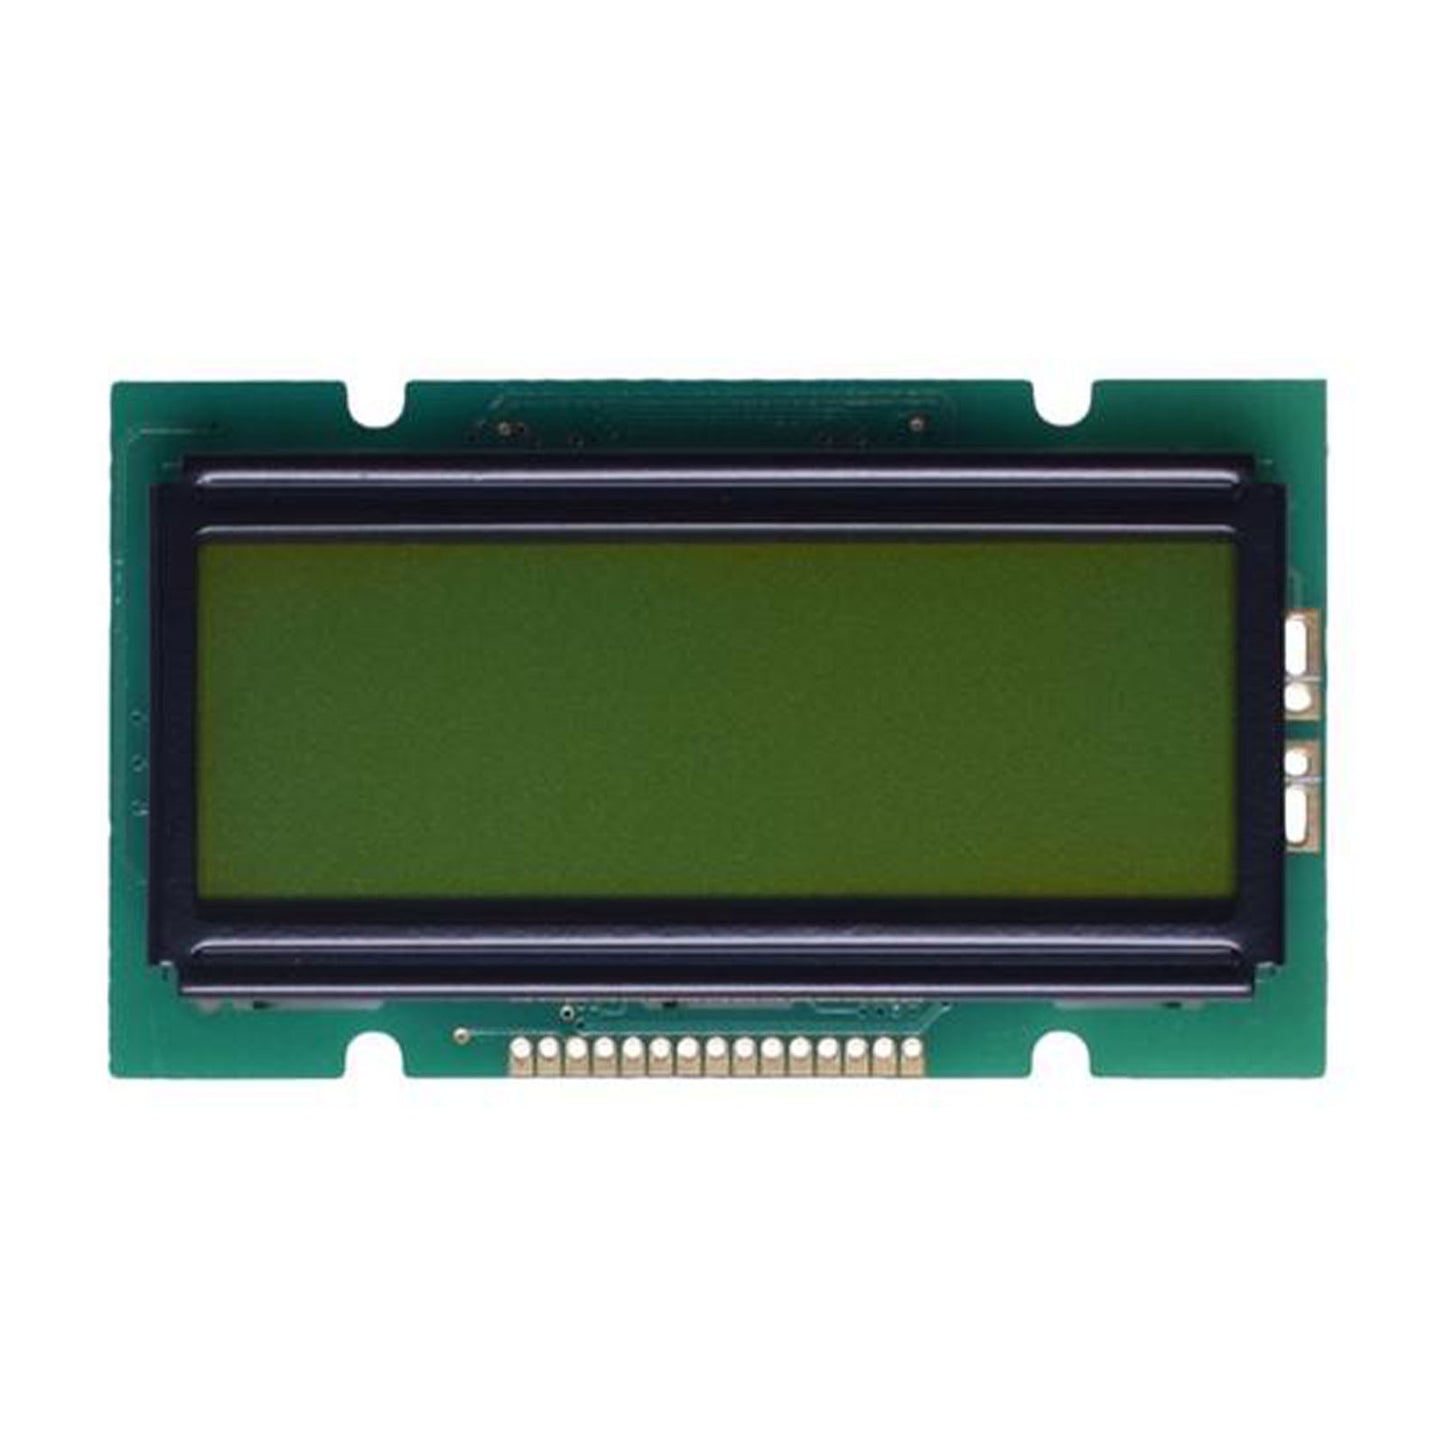 DisplayModule 12x2 Character LCD - MCU